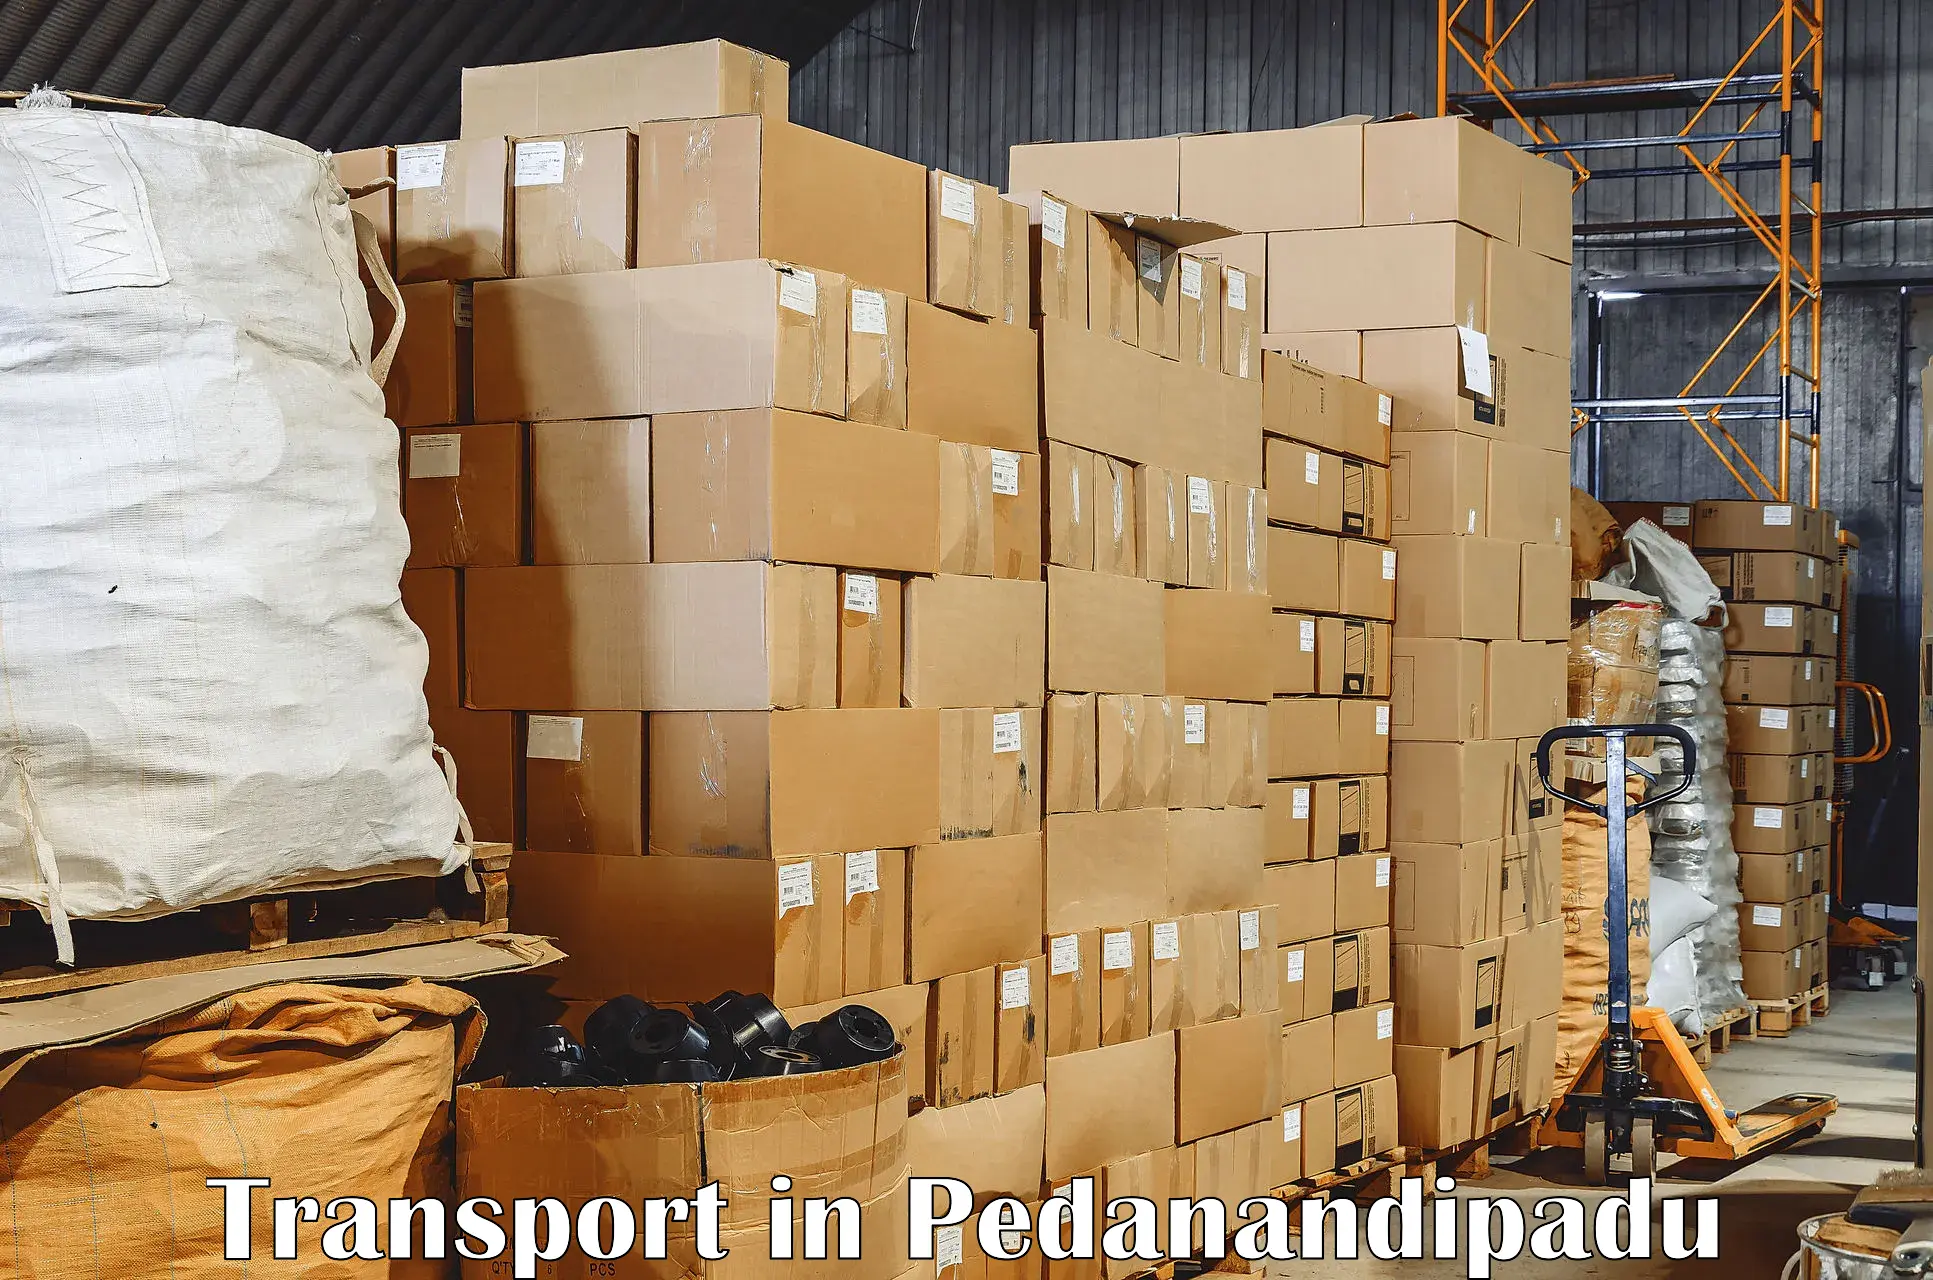 Interstate transport services in Pedanandipadu